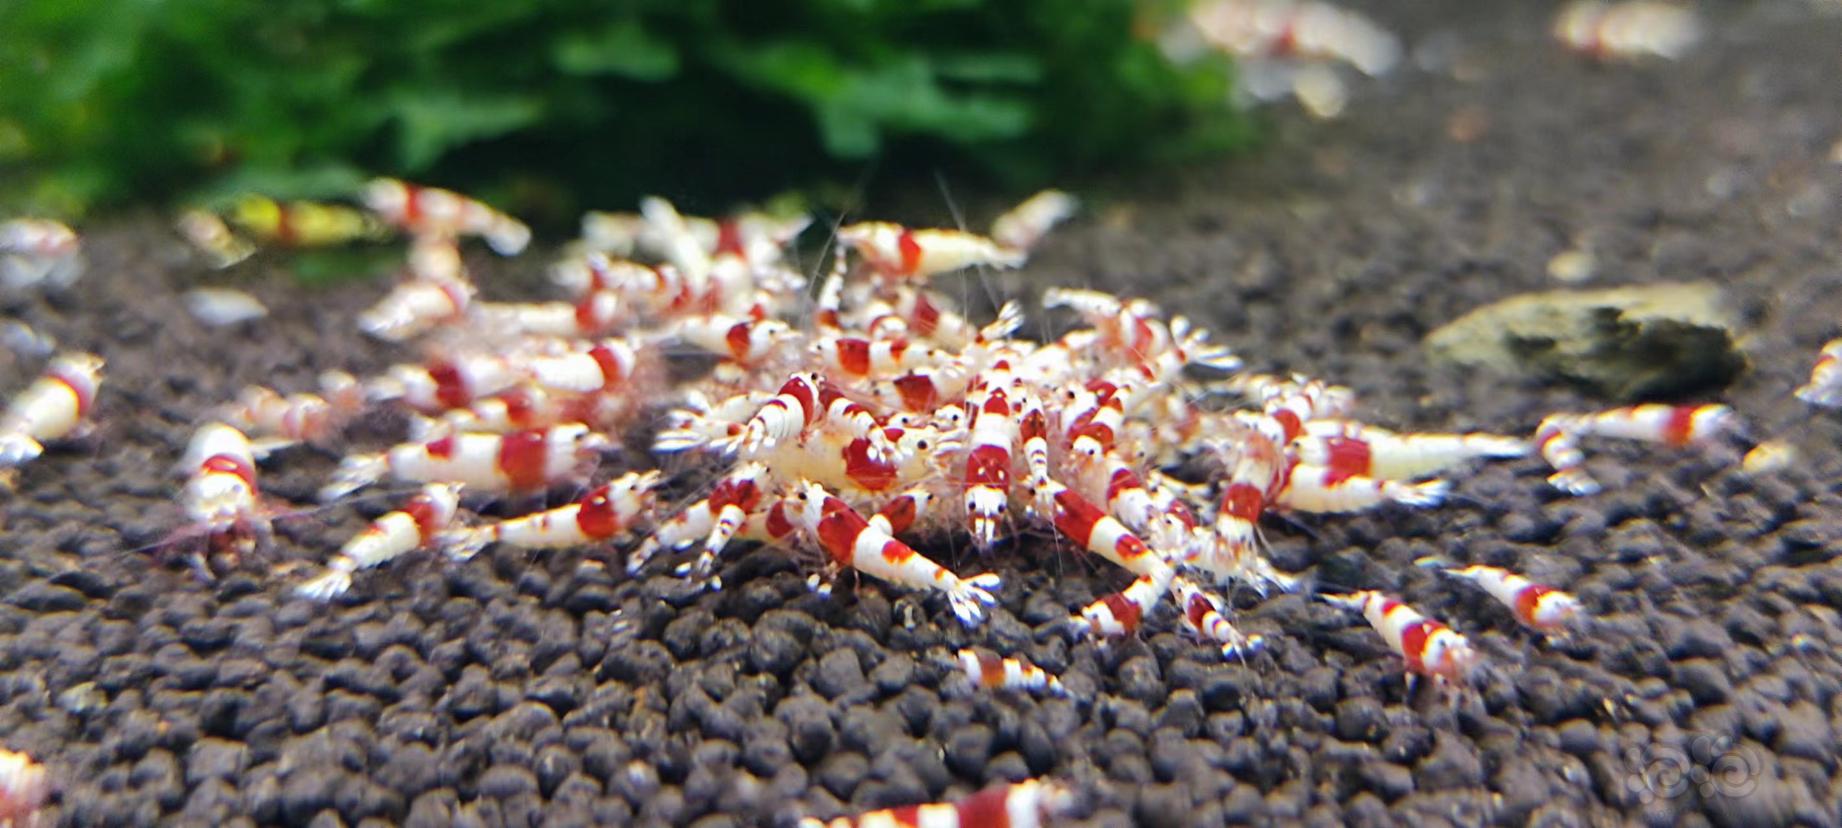 【水晶虾】卖红白咯-图1